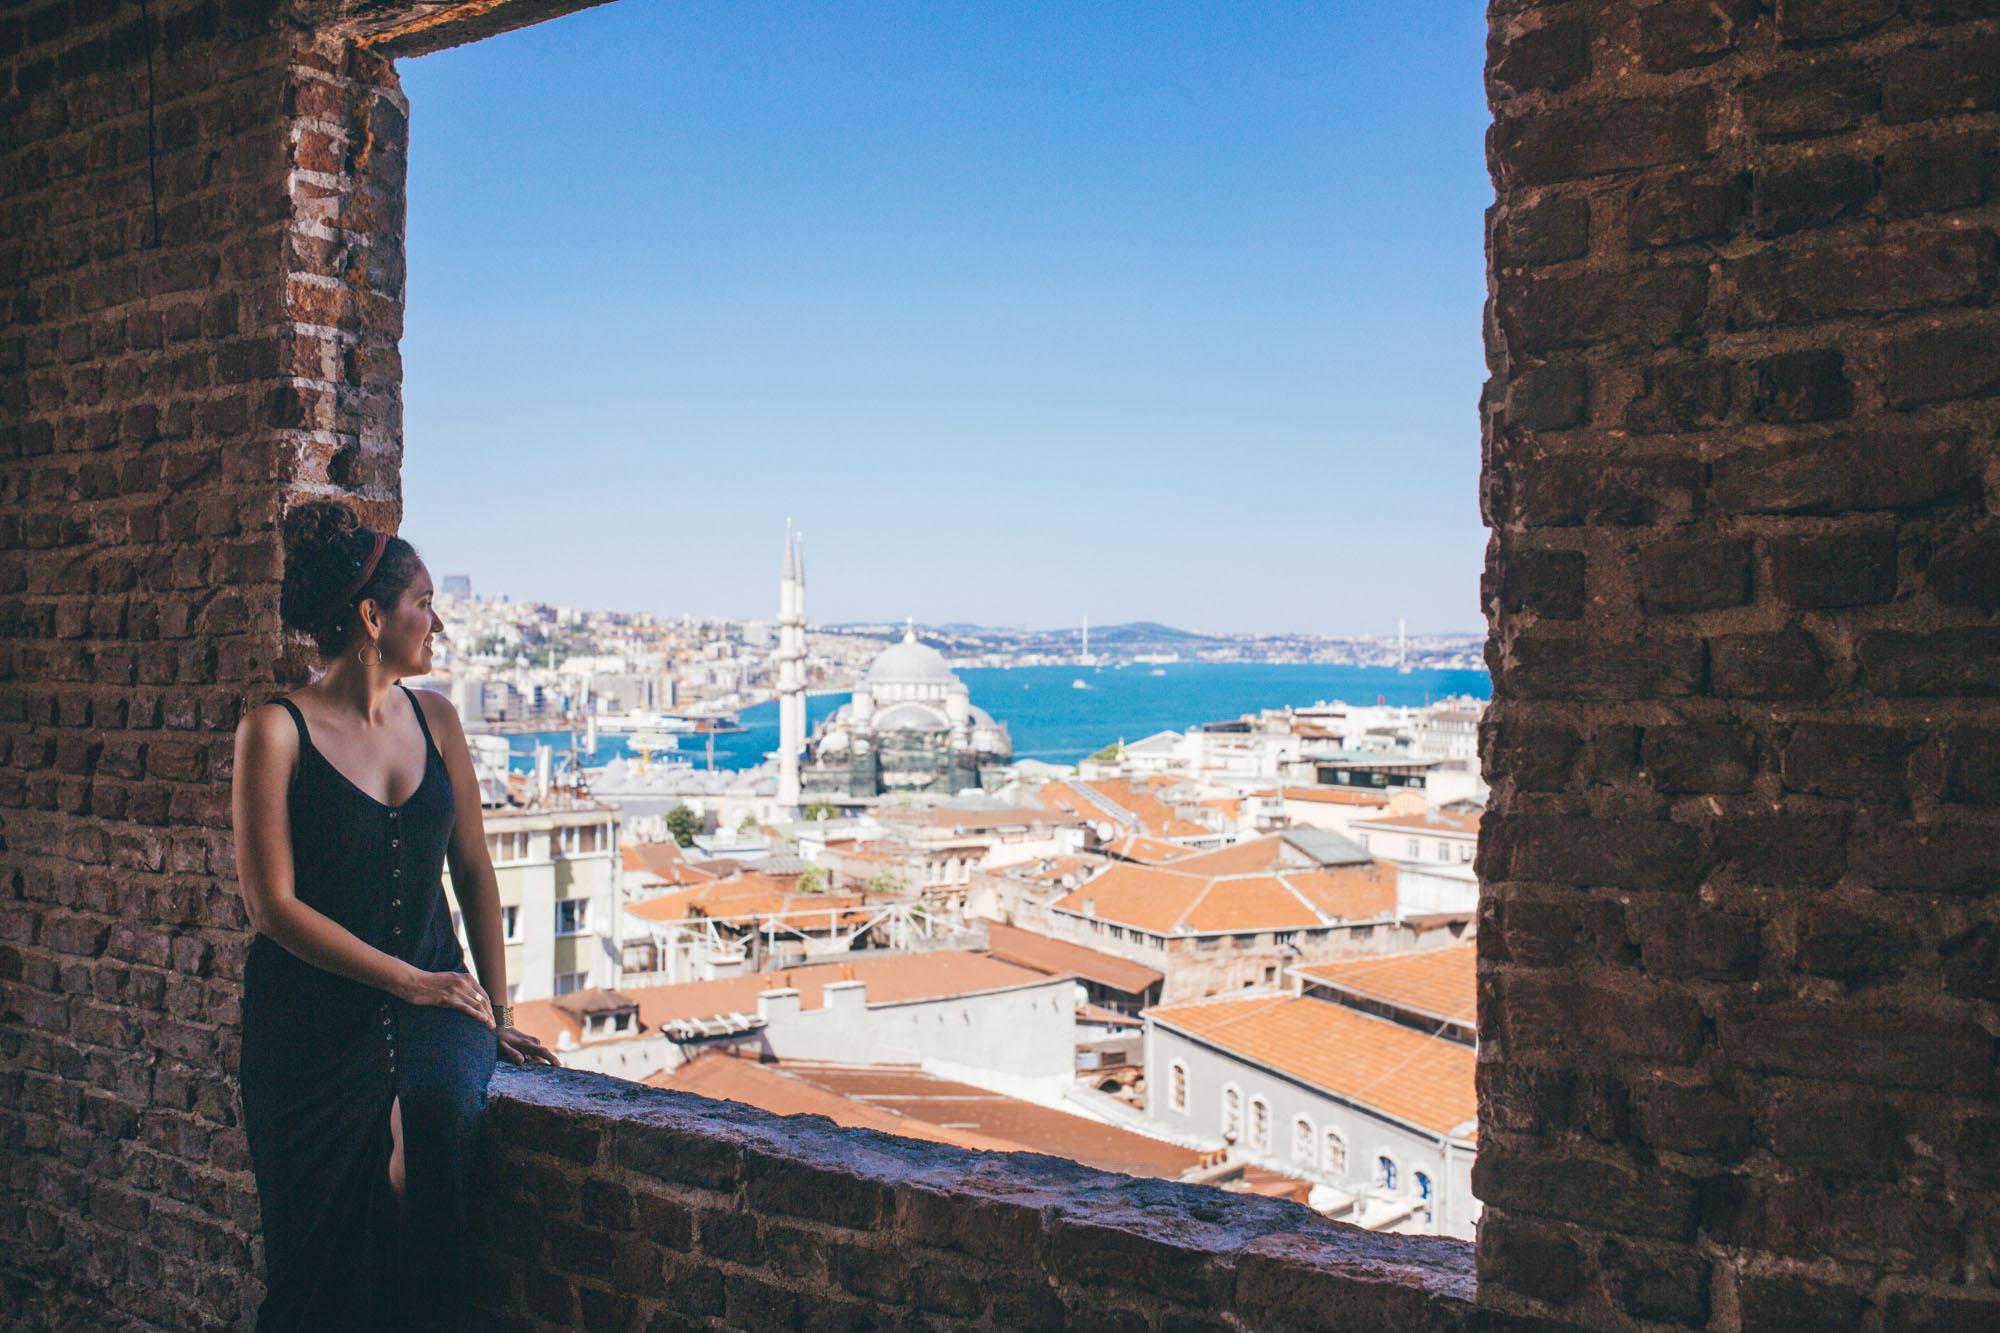 Book a Trip of Turkey – A Wonderful Vacation Idea